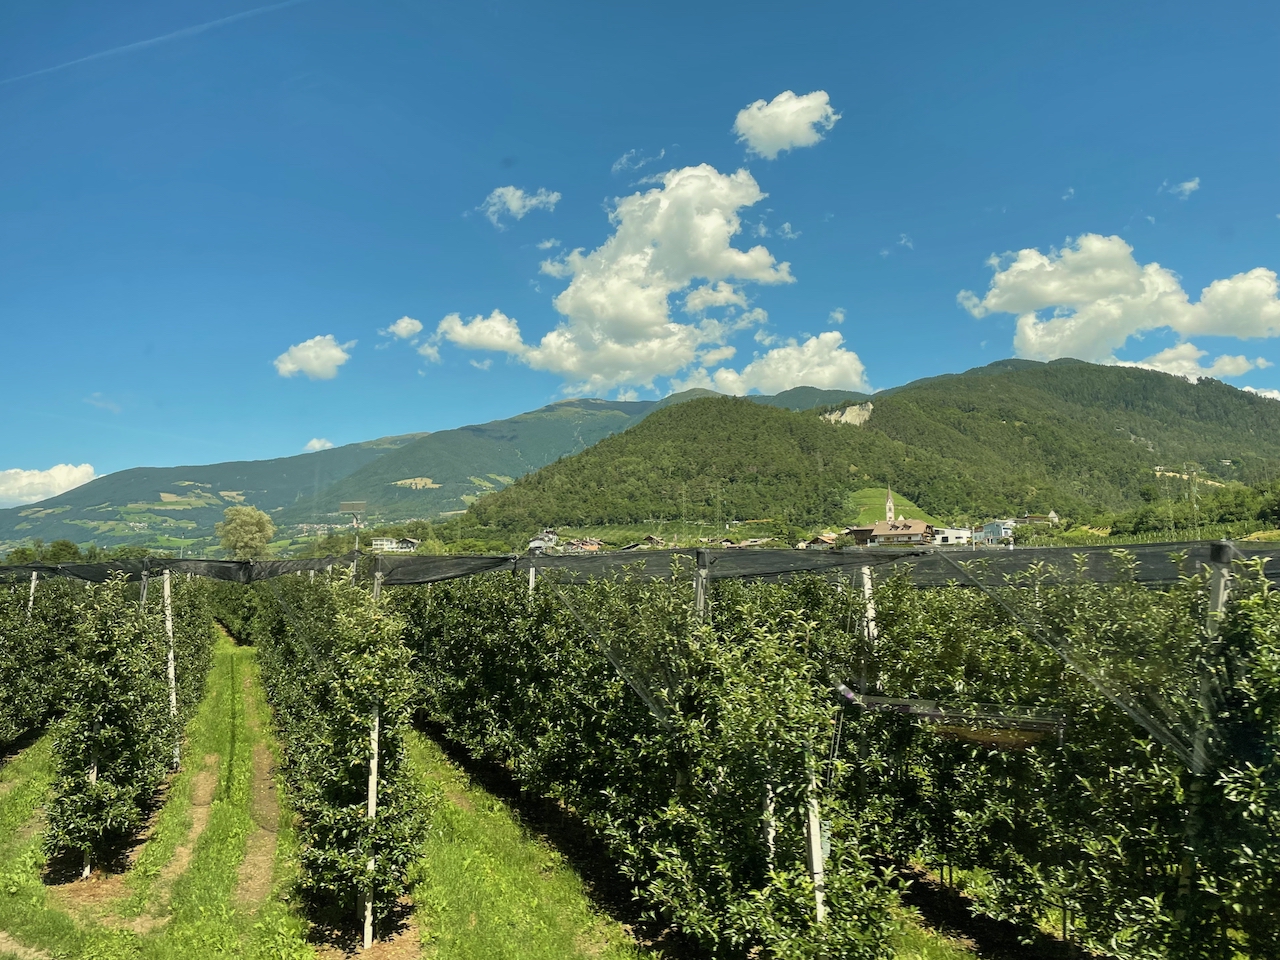 Typisch Südtirol: Apfelbäume soweit das Auge reicht